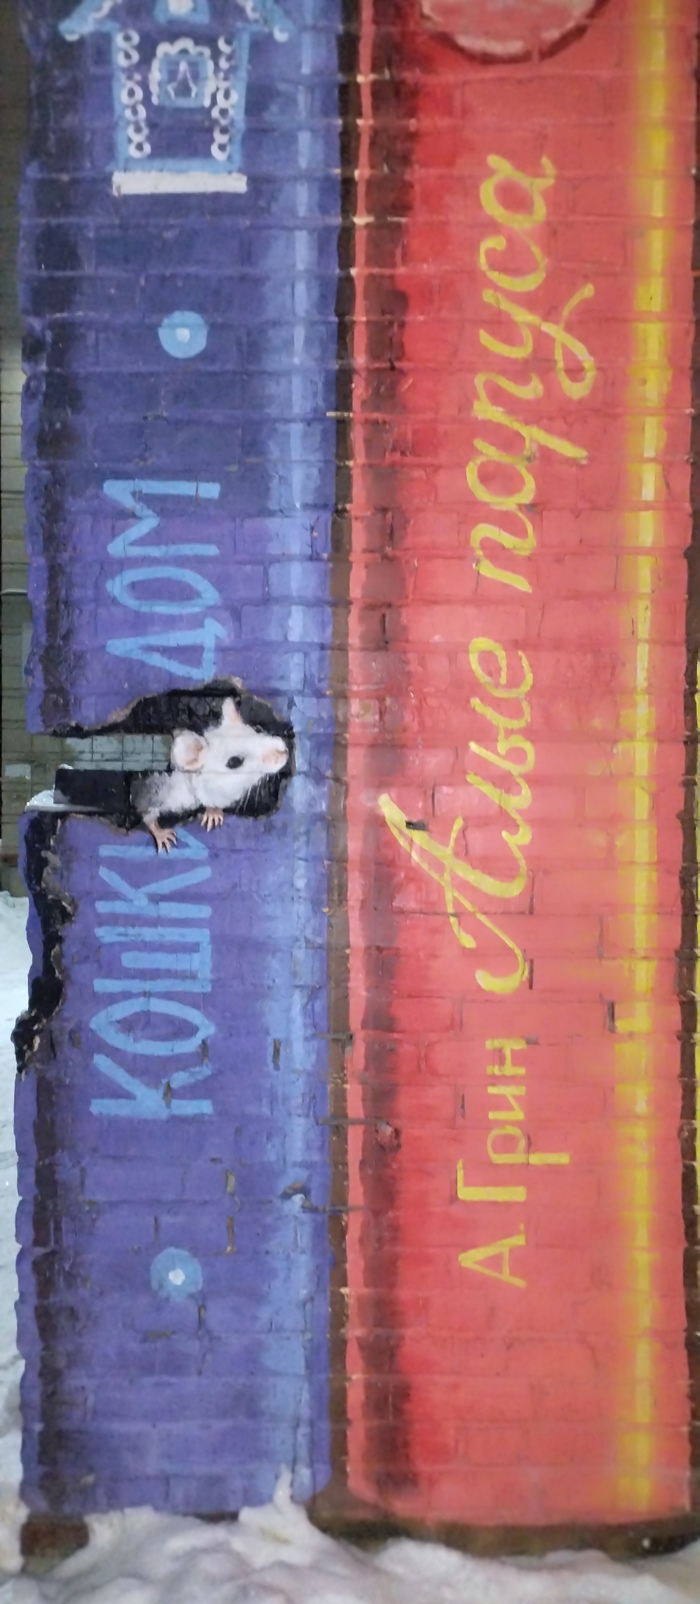 Дыра в стене как художественная задумка Академгородок, Новосибирск, Коммунальные службы, Дыра, Ветхое жильё, ЖКХ, Стрит-арт, Длиннопост